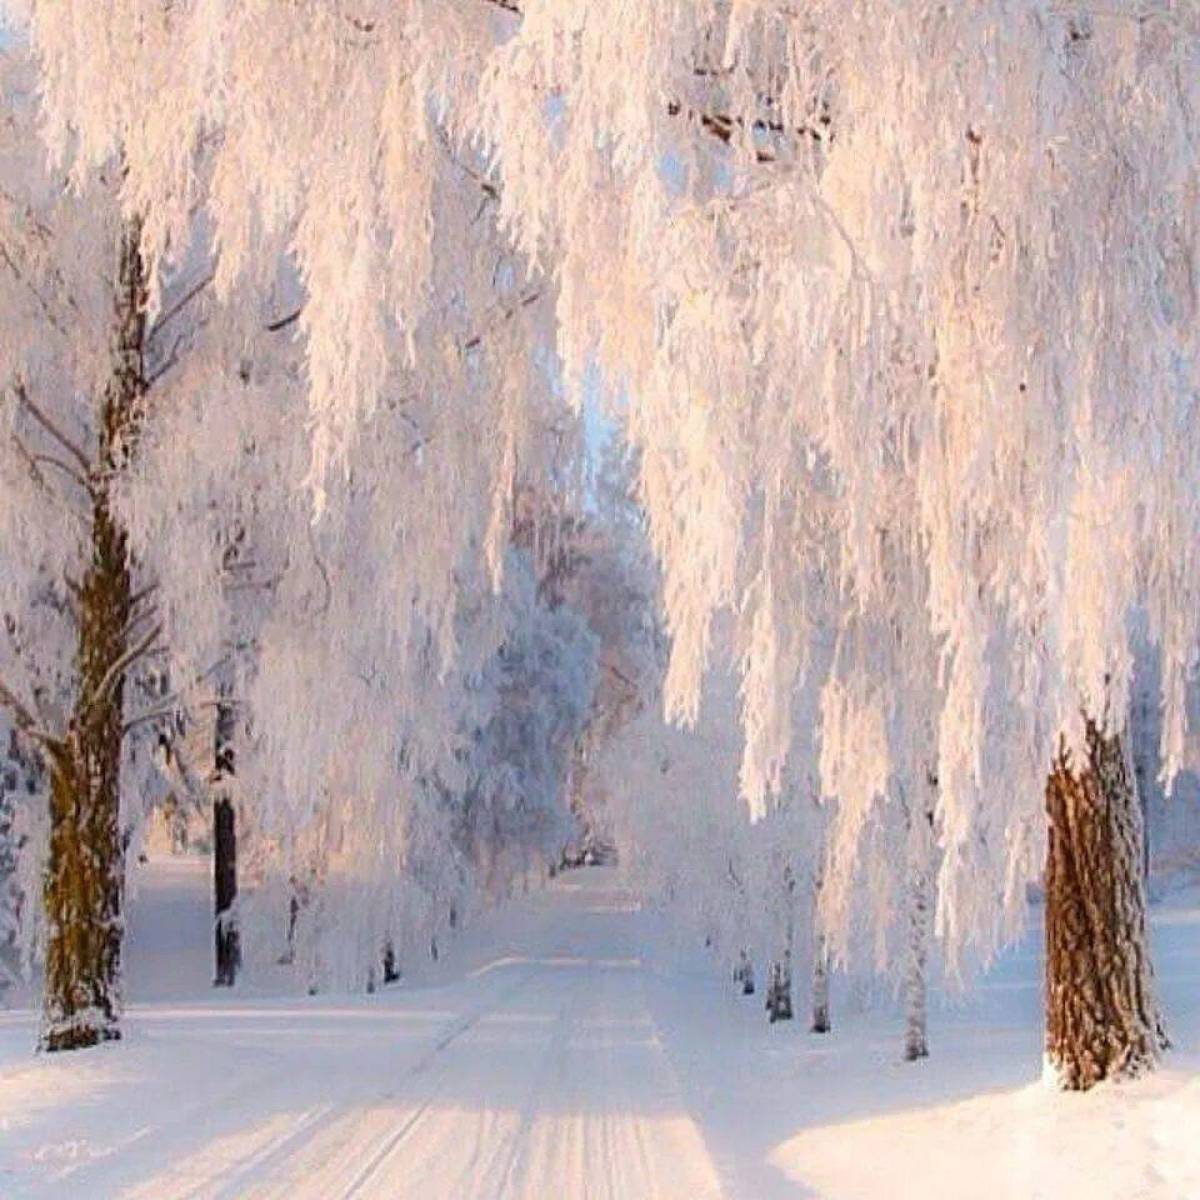 Is winter beautiful